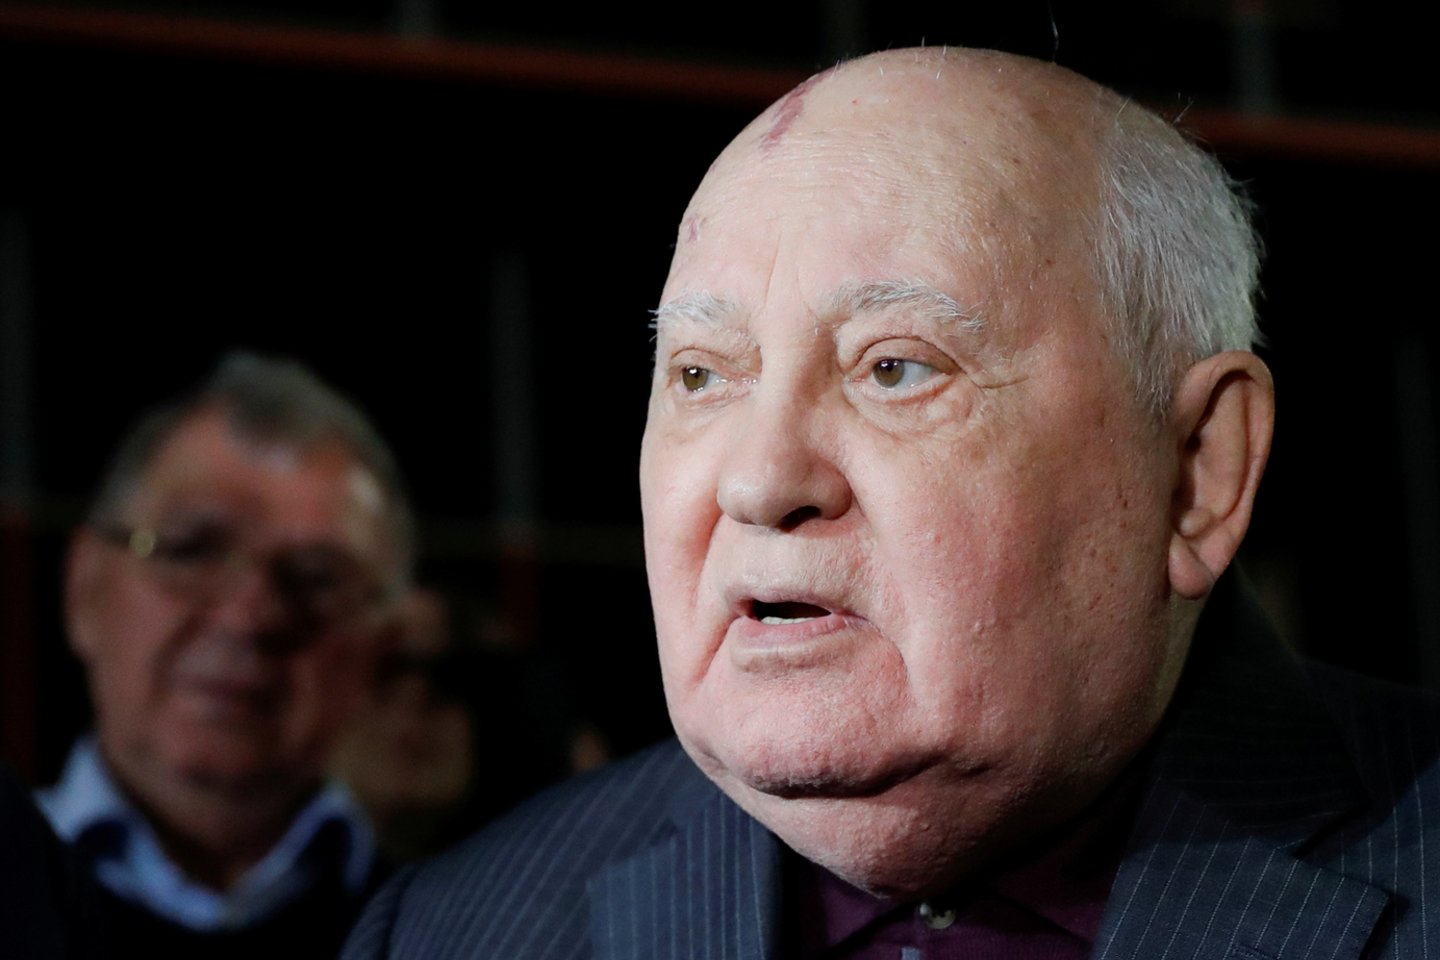 Buvęs Sovietų Sąjungos lyderis ir Nobelio taikos premijos laureatas Michailas Gorbačiovas.<br>Reuters/Scanpix nuotr.